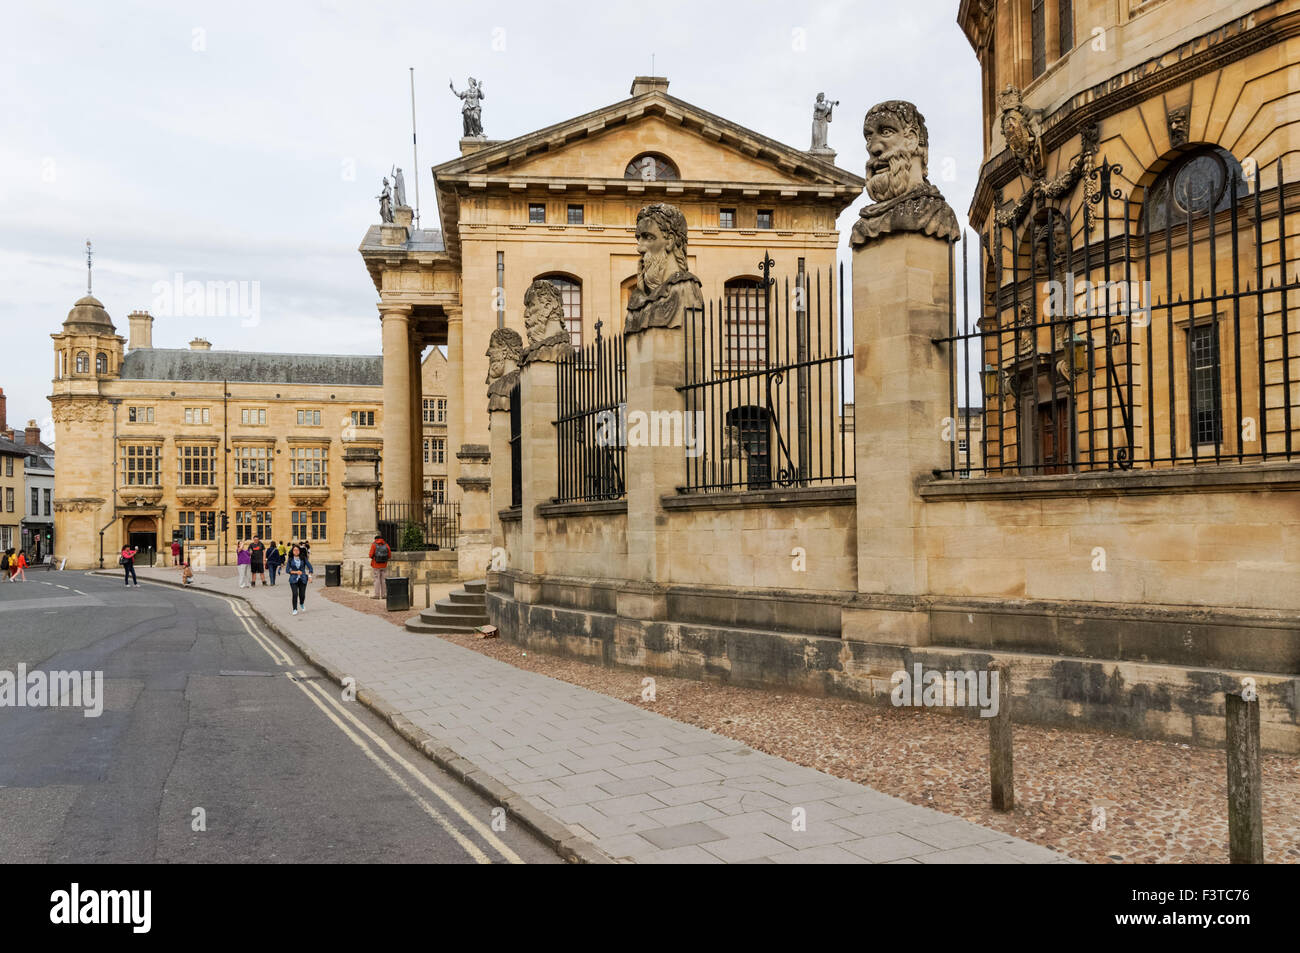 17e et 18e siècle bâtiments à Broad Street à Oxford Oxfordshire England Royaume-Uni UK Banque D'Images